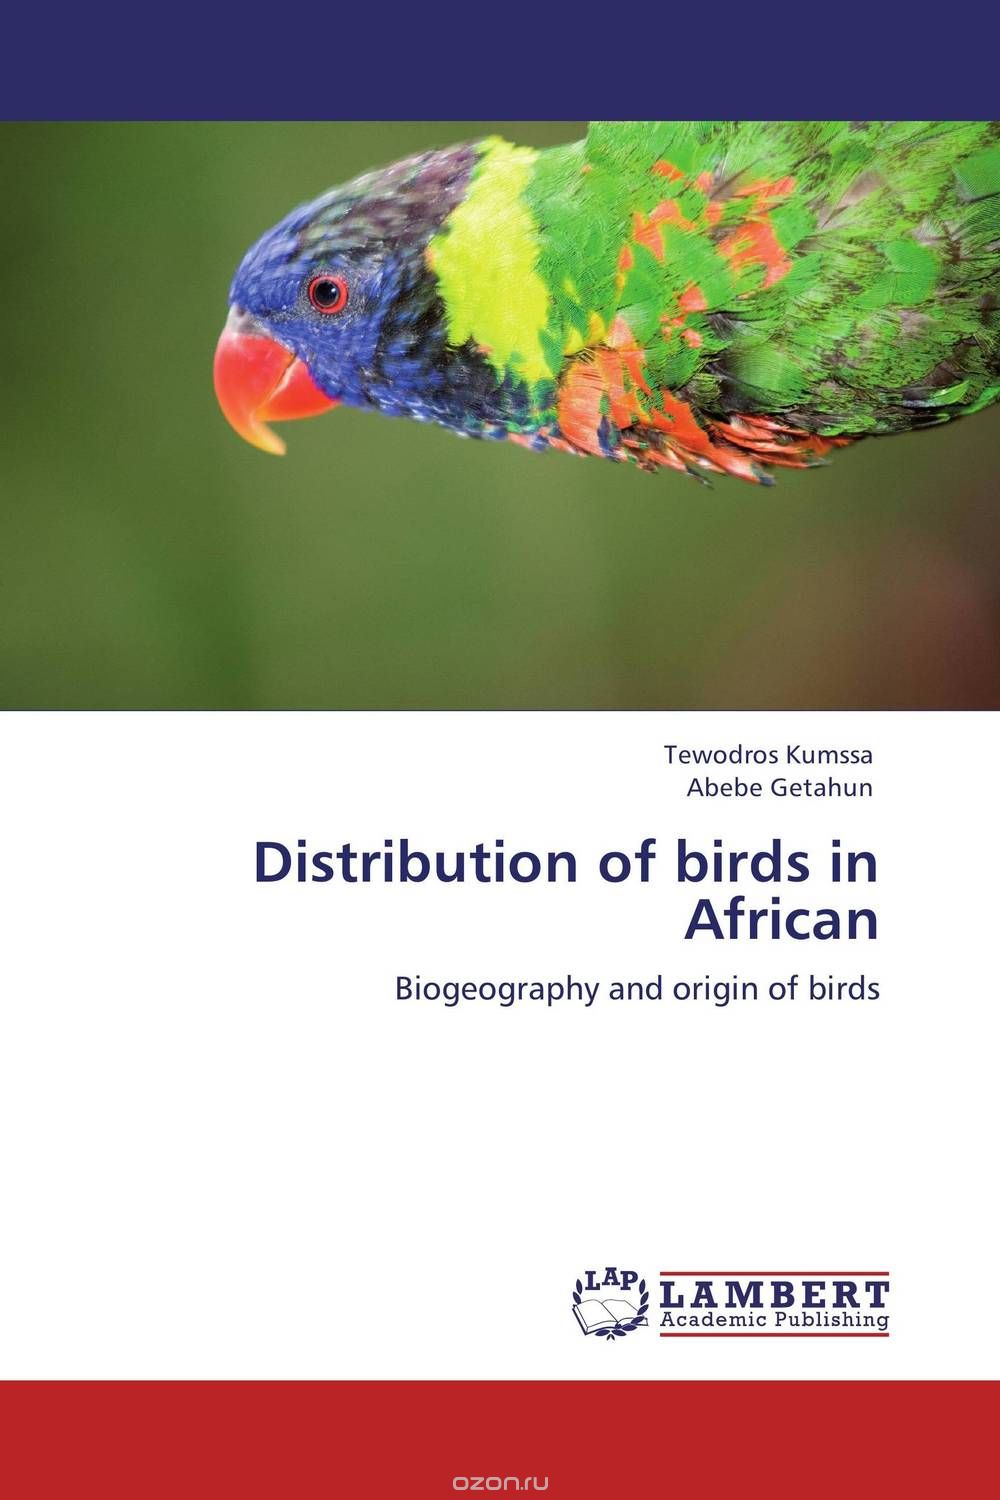 Скачать книгу "Distribution of birds in African"